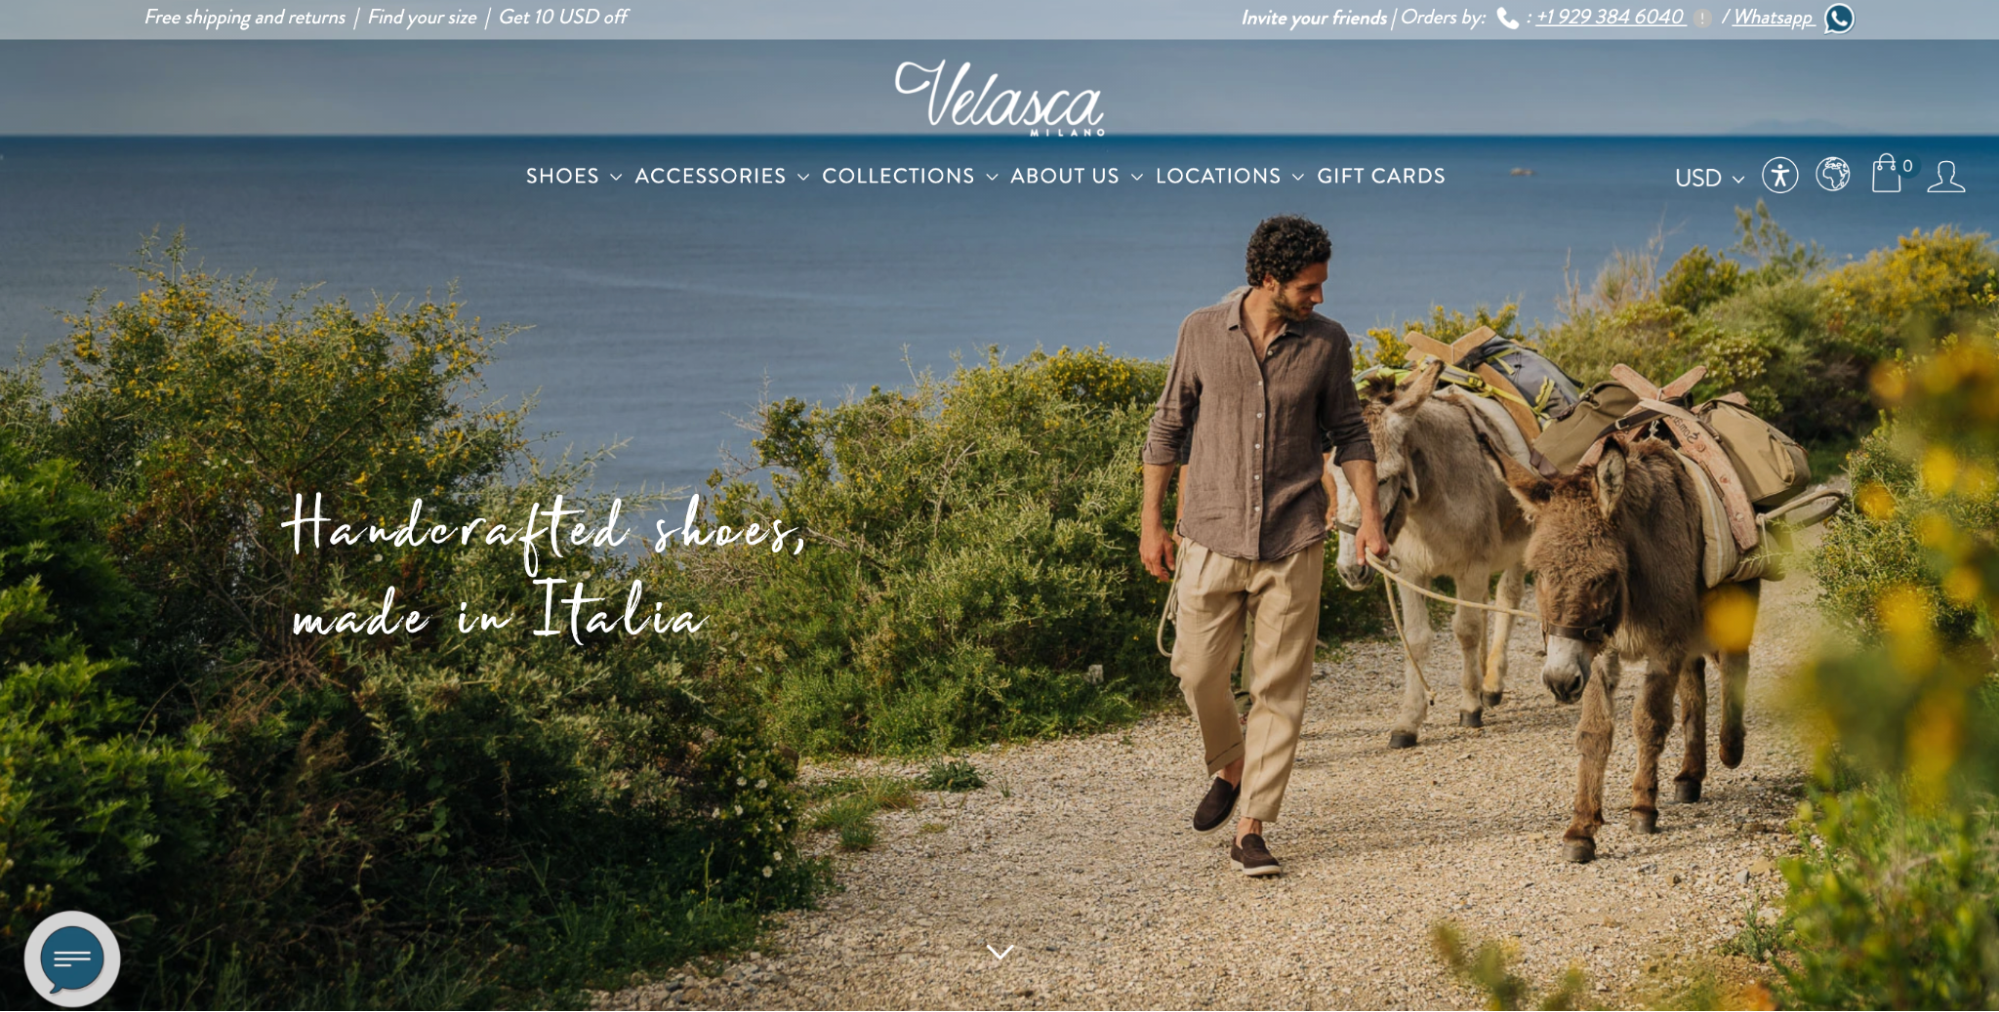 Velasca 的网页设计专注于以鞋子、腰带和包为特色的生活方式摄影